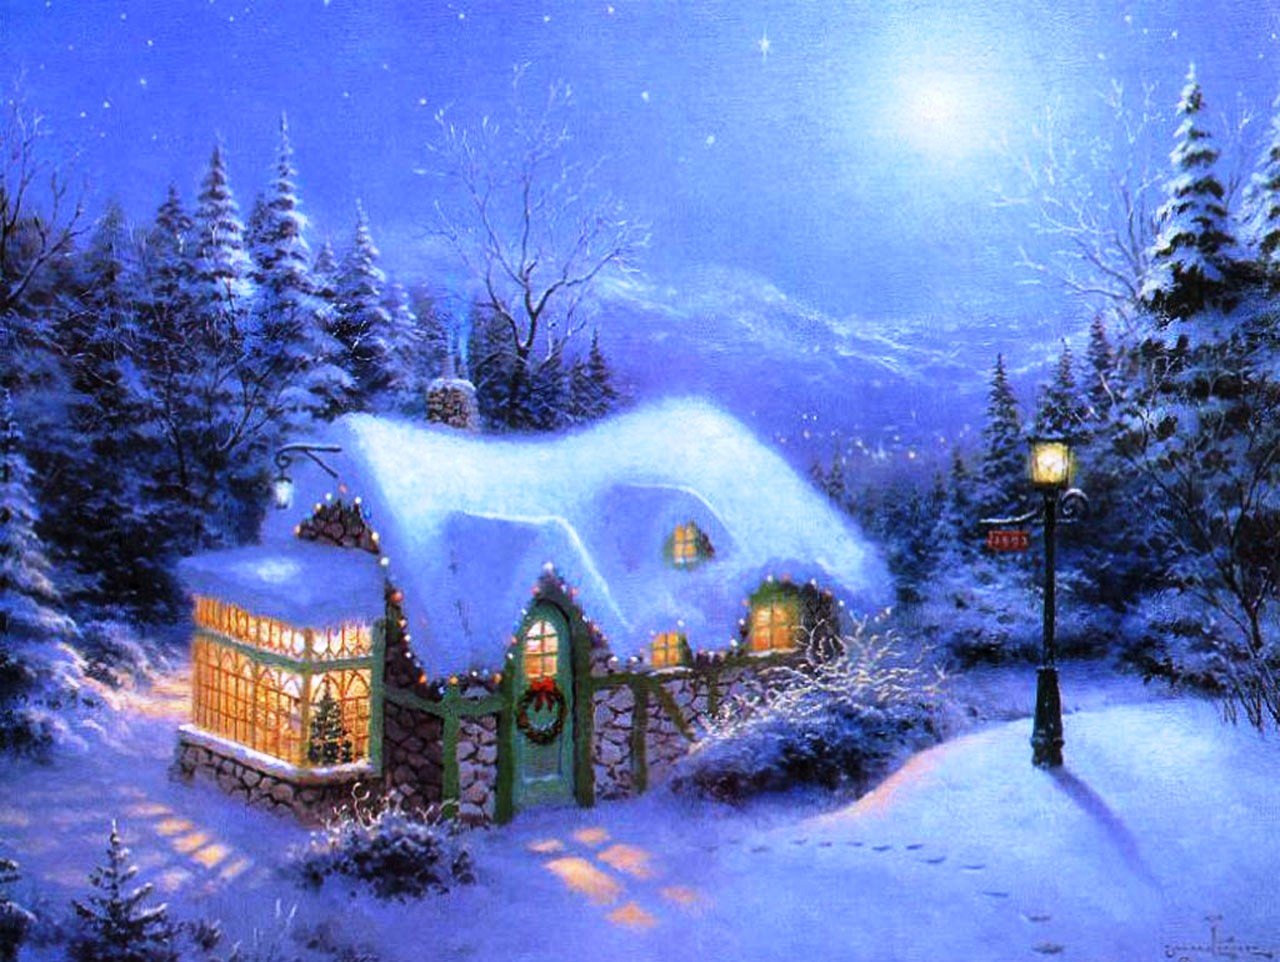  Christmas Desktop Wallpapers christmaswallpapers18 1280x962